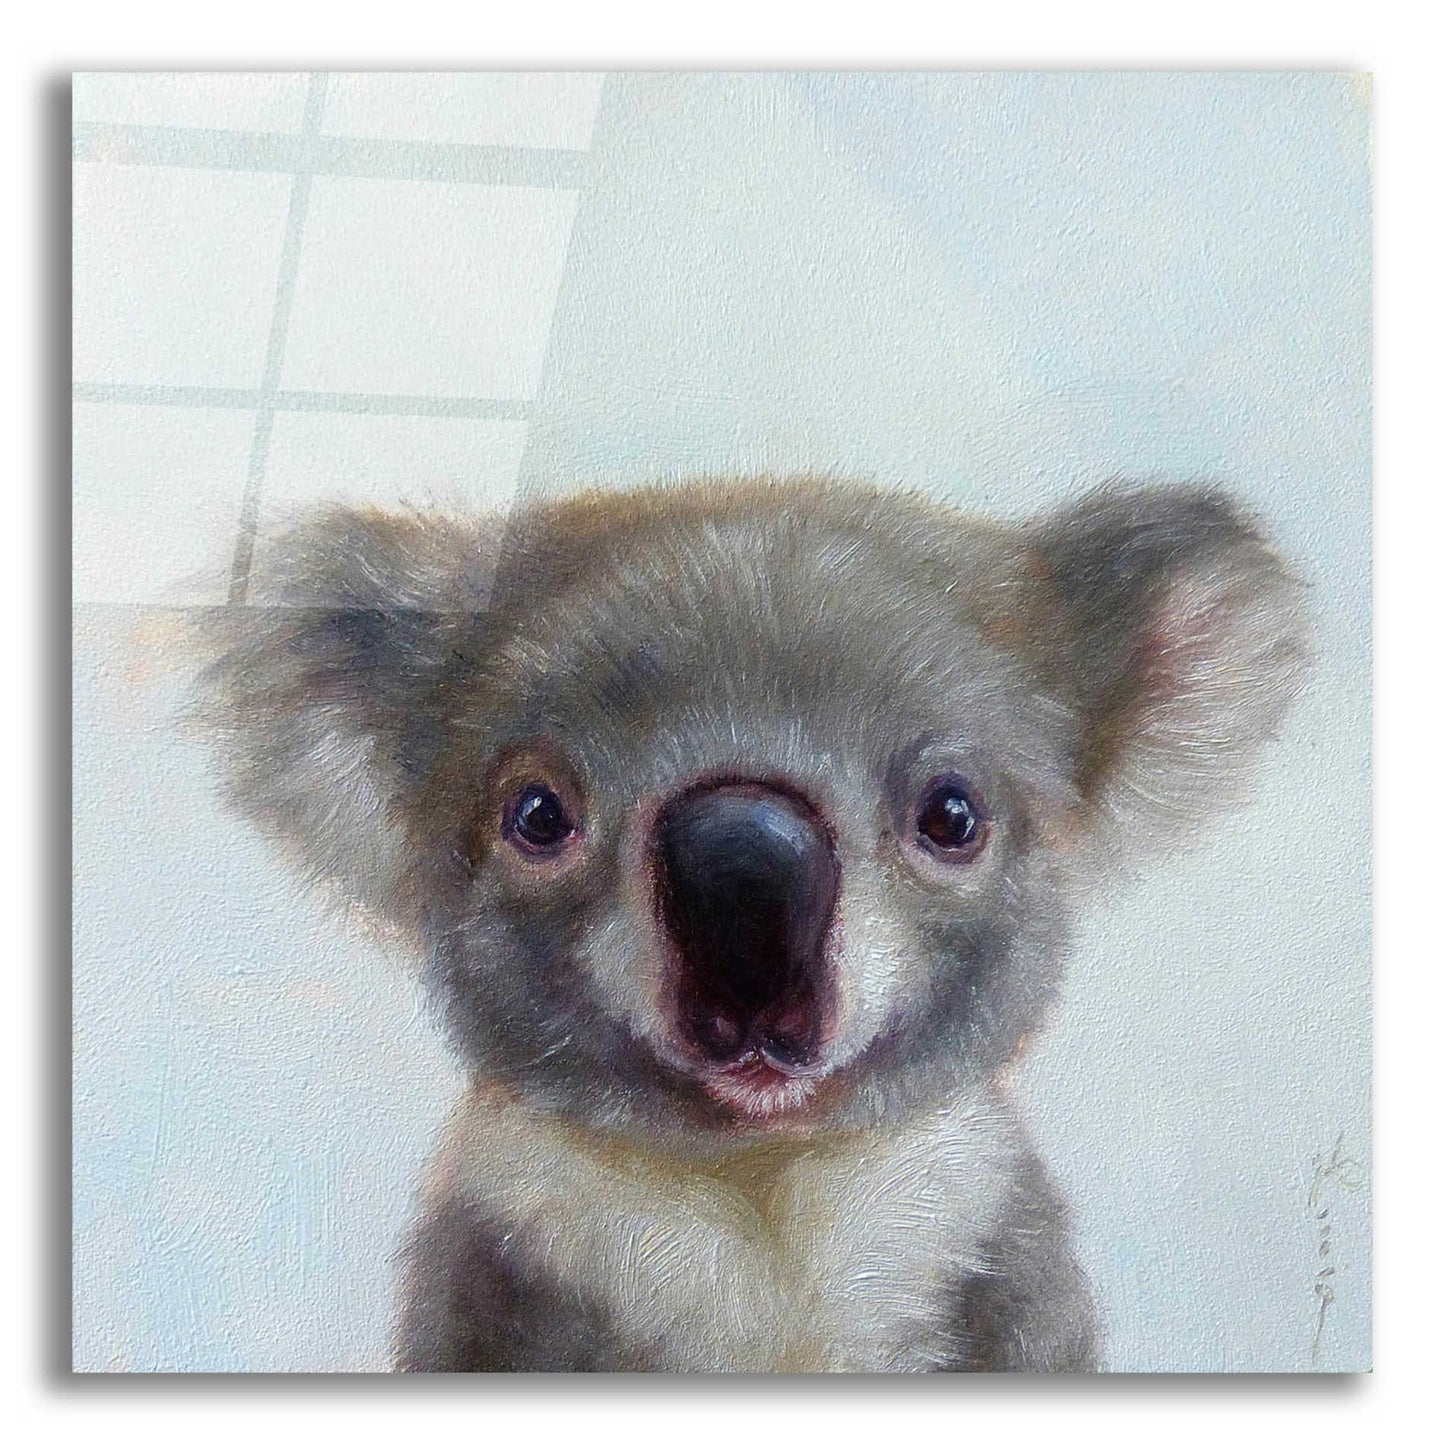 Epic Art 'Lil Koala' by Lucia Heffernan, Acrylic Glass Wall Art